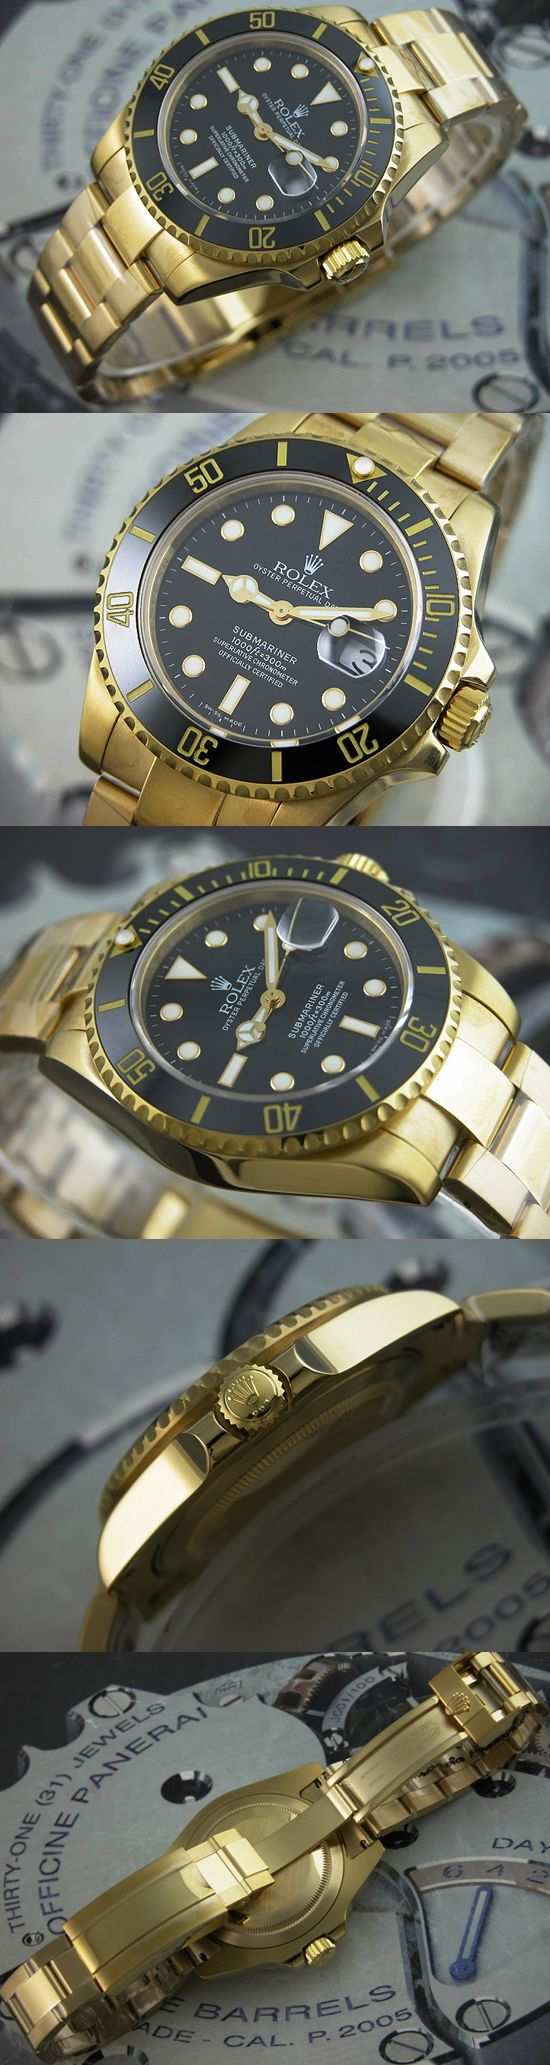 おしゃれなブランド時計がロレックス-サブマリーナ-ROLEX-116610-42-男性用を提供します.